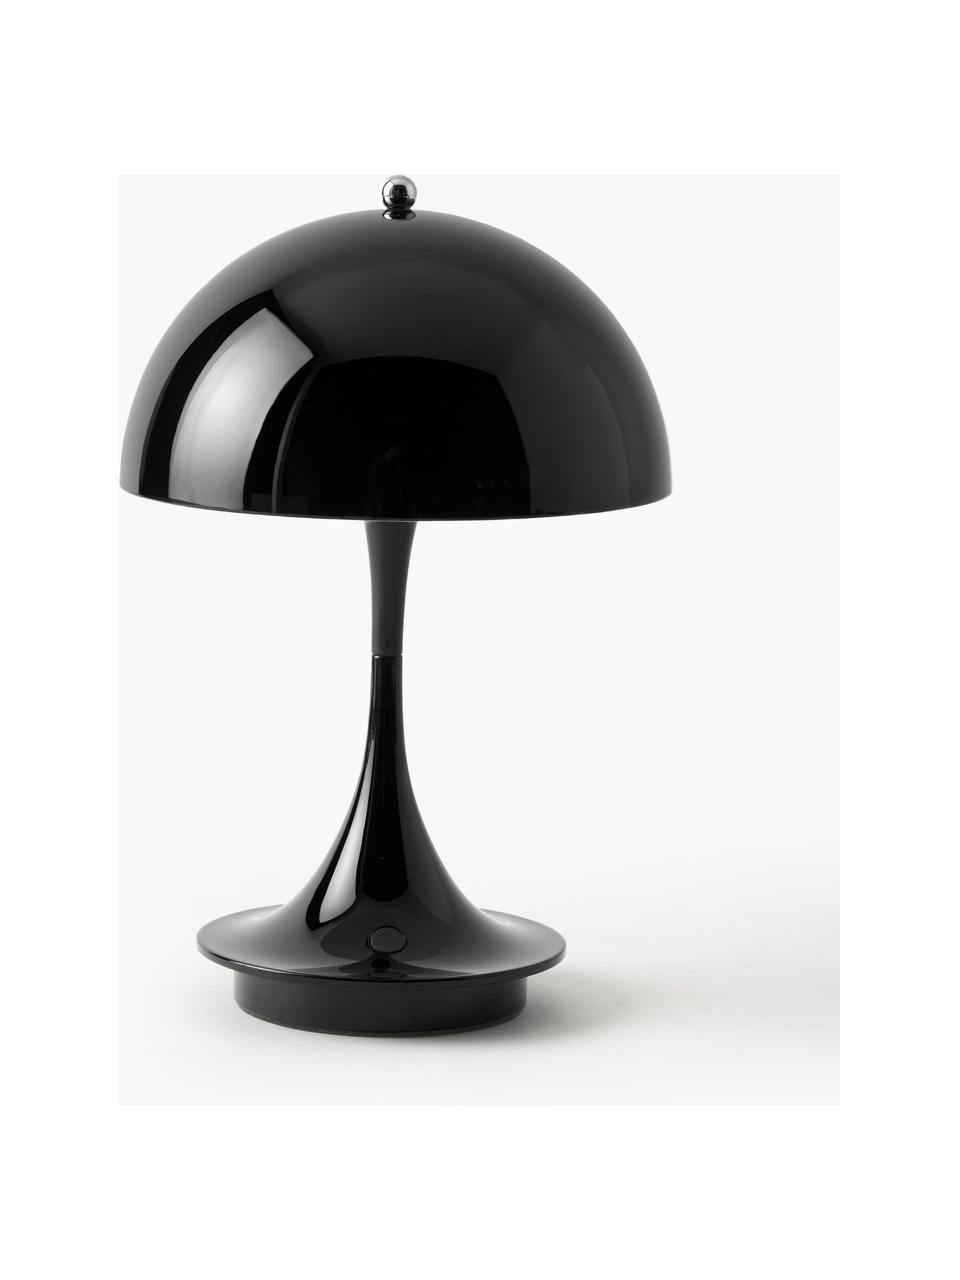 Mobilna lampa stołowa LED z funkcją przyciemniania Panthella, W 24 cm, Stelaż: aluminium powlekane, Czarna stal, Ø 16 x 24 cm